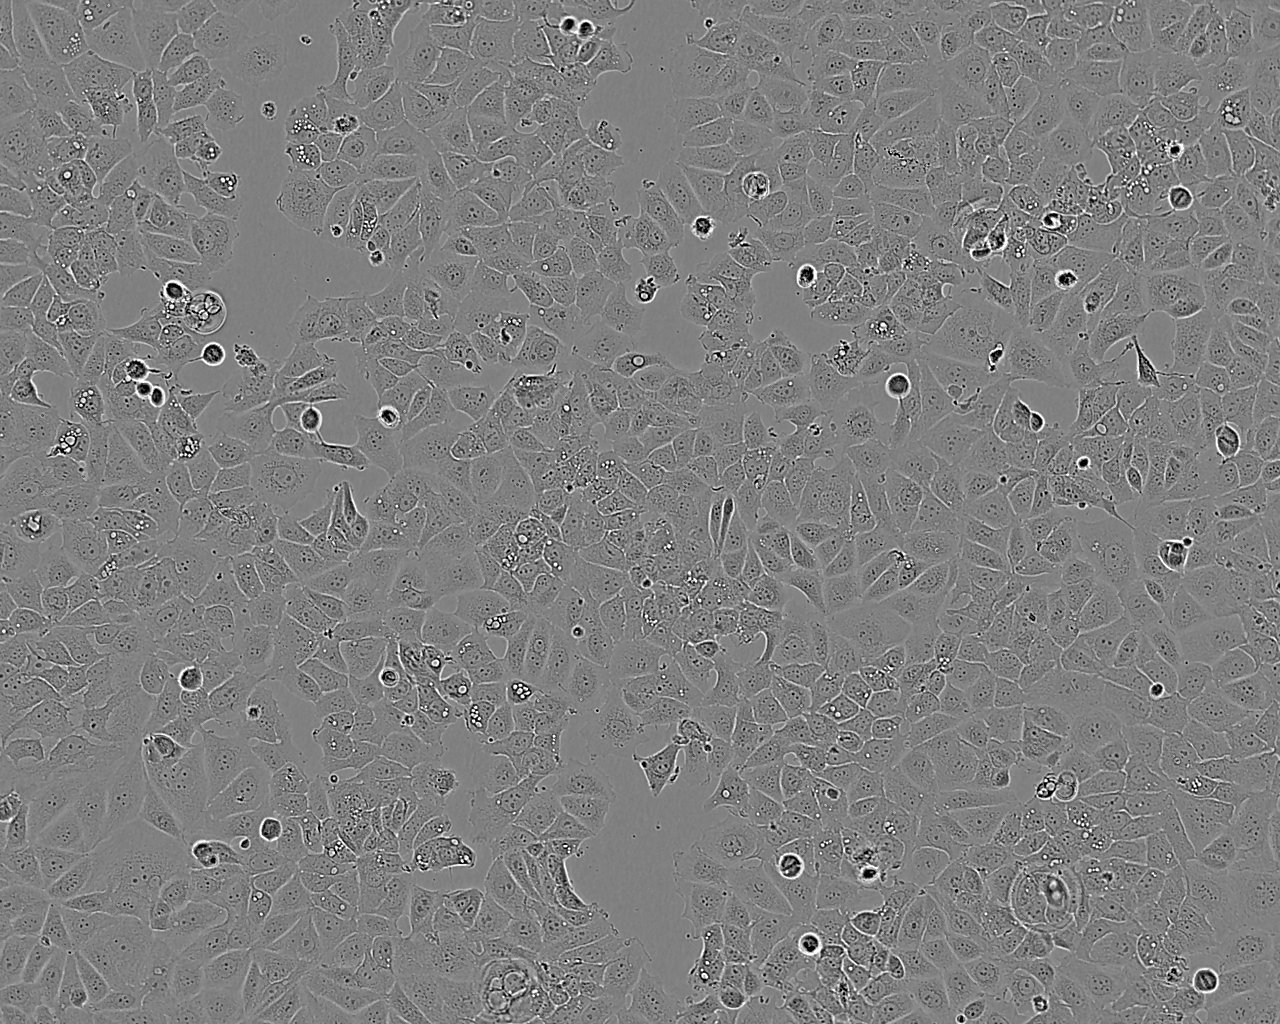 SNU-638 Cell:人胃癌细胞系,SNU-638 Cell